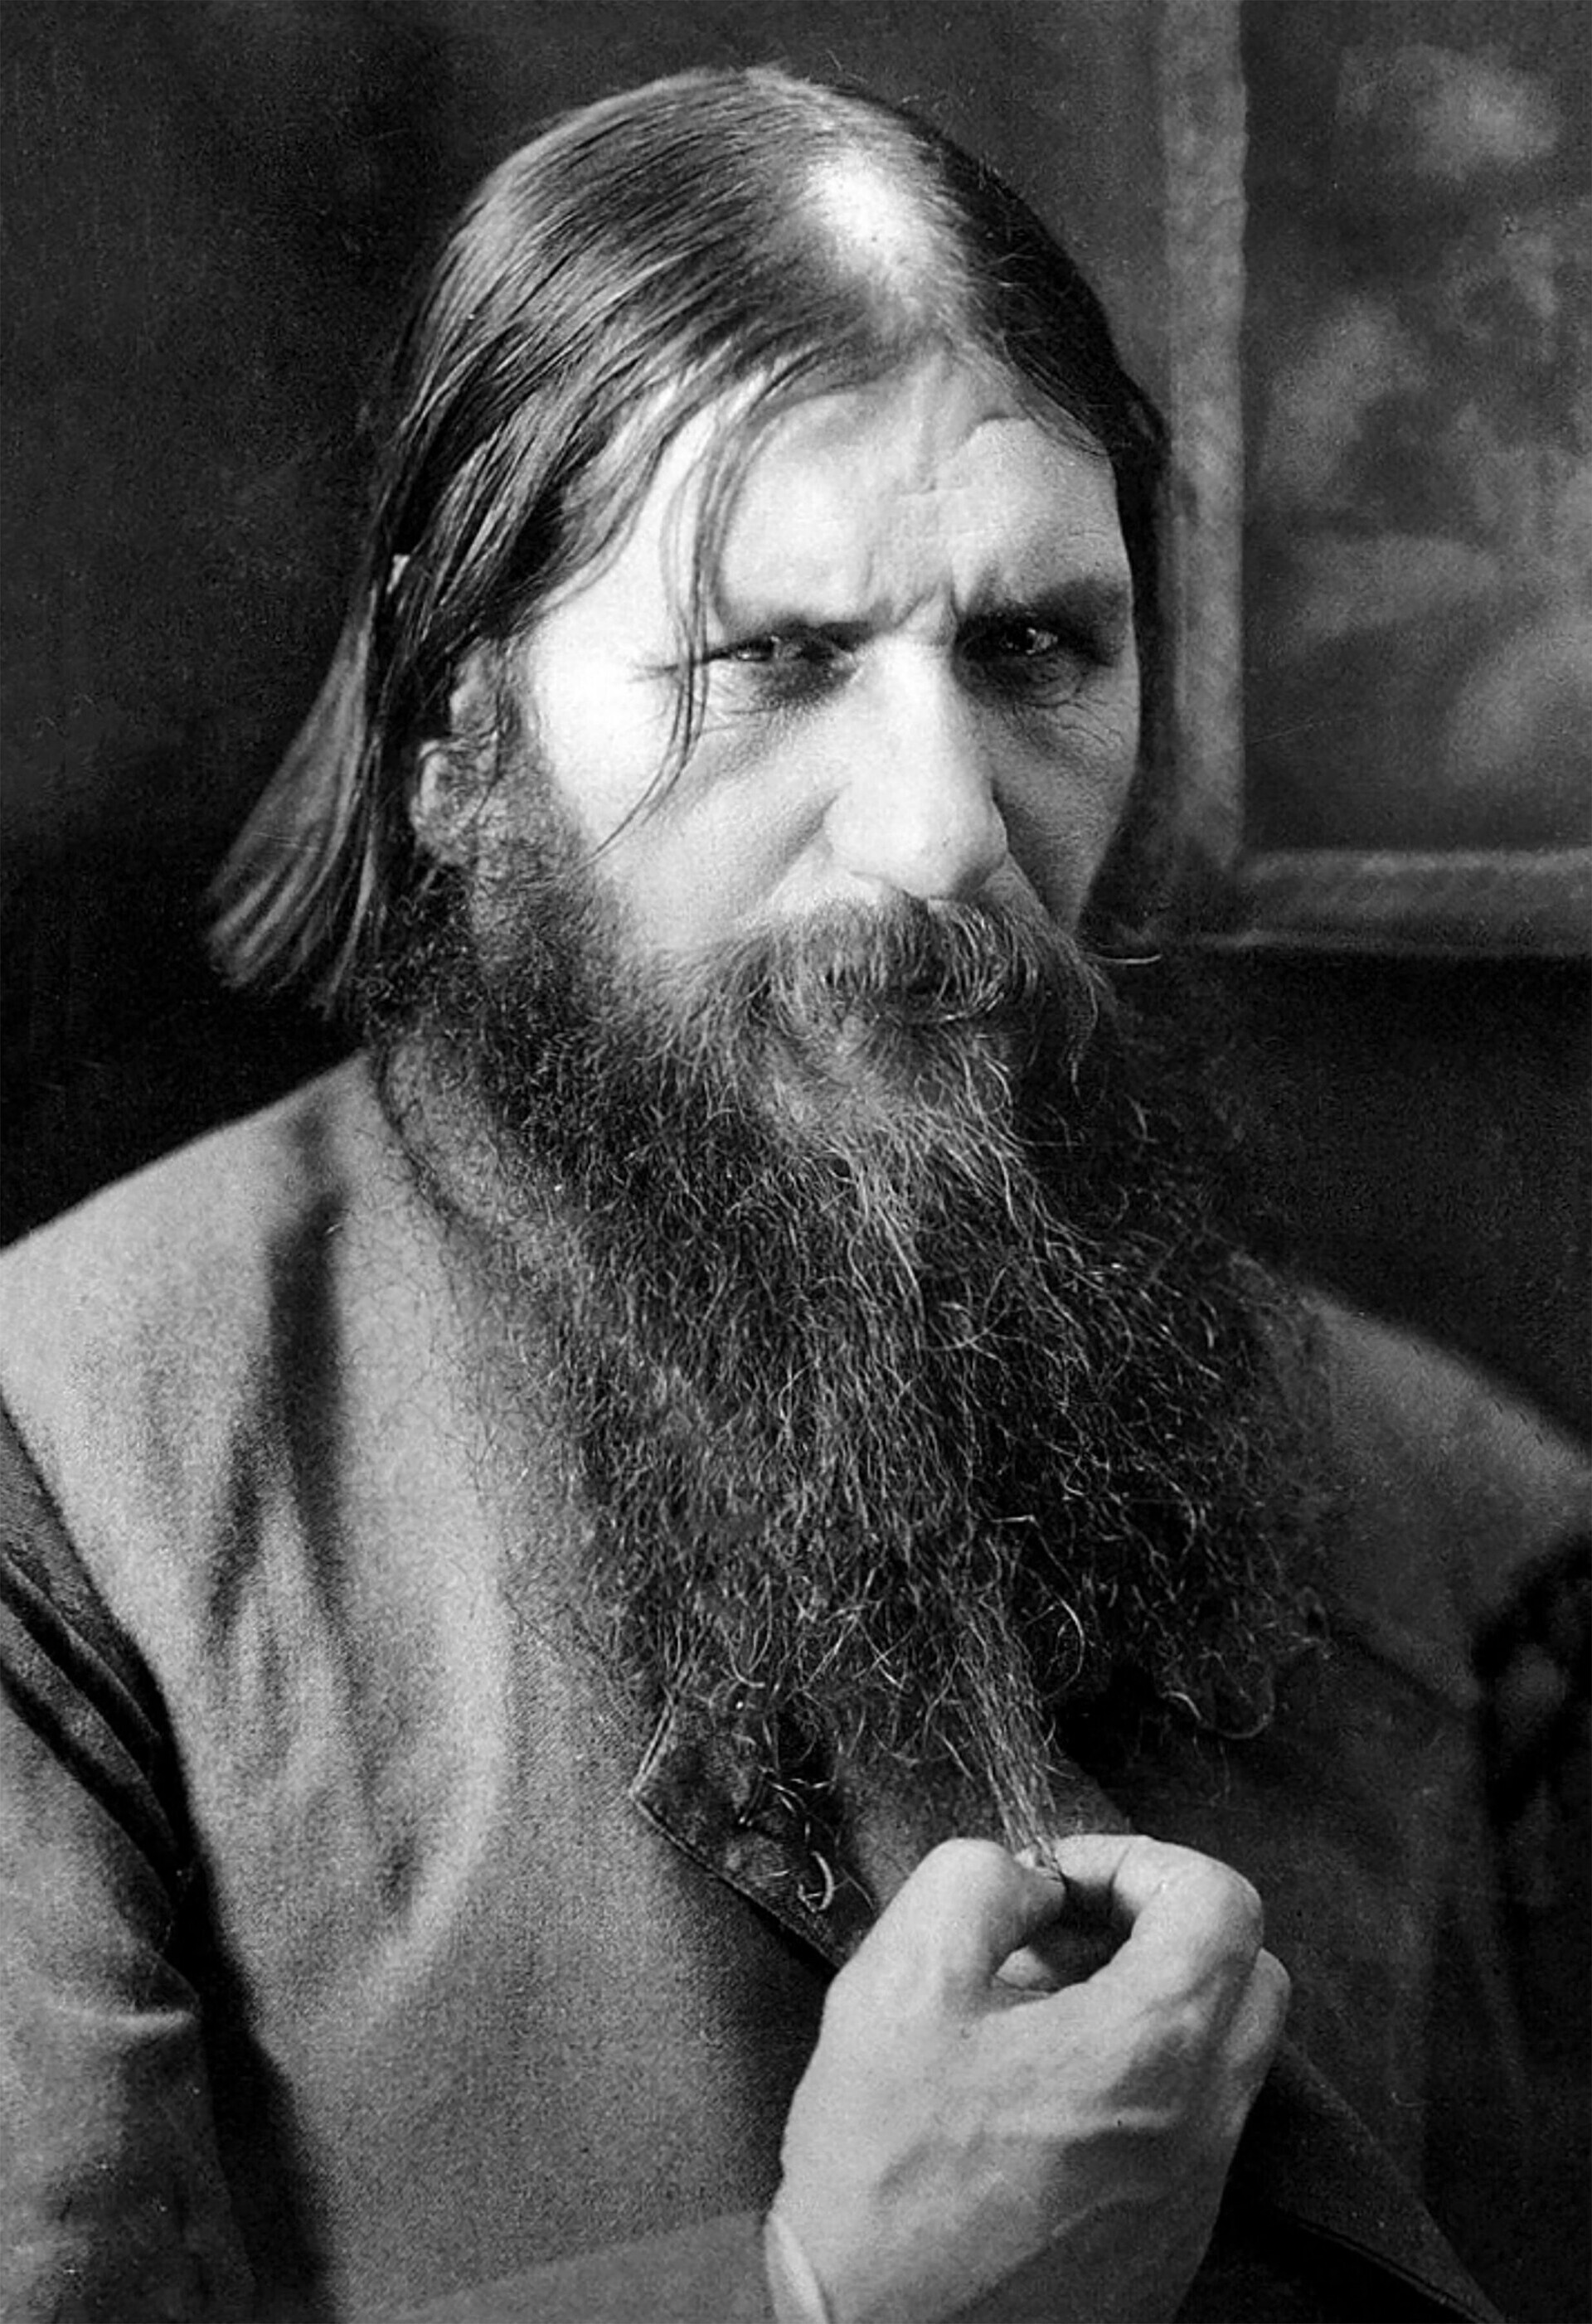 Rasputin.
